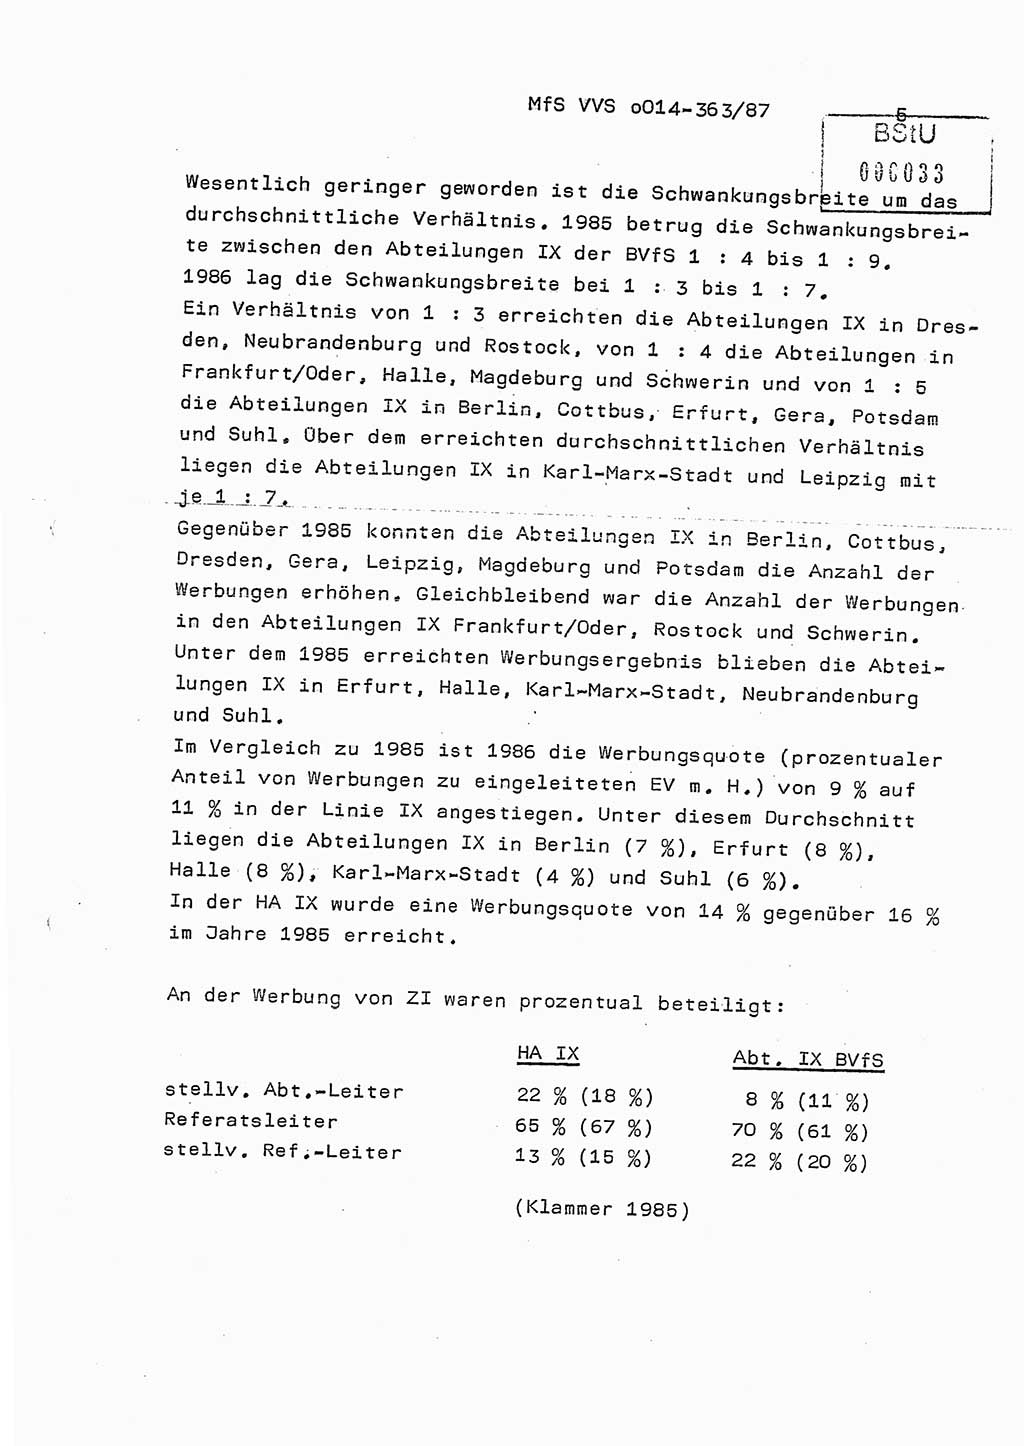 Ministerium für Staatssicherheit (MfS) [Deutsche Demokratische Republik (DDR)], Hauptabteilung (HA) Ⅸ/ Auswertungs- und Kontrollgruppe (AKG), Bereich Koordinierung, Jahresanalyse, Vertrauliche Verschlußsache (VVS) o014-363/87, Berlin 1987, Seite 5 (J.-Anal. MfS DDR HA Ⅸ/AKG VVS o014-363/87 1986, S. 5)